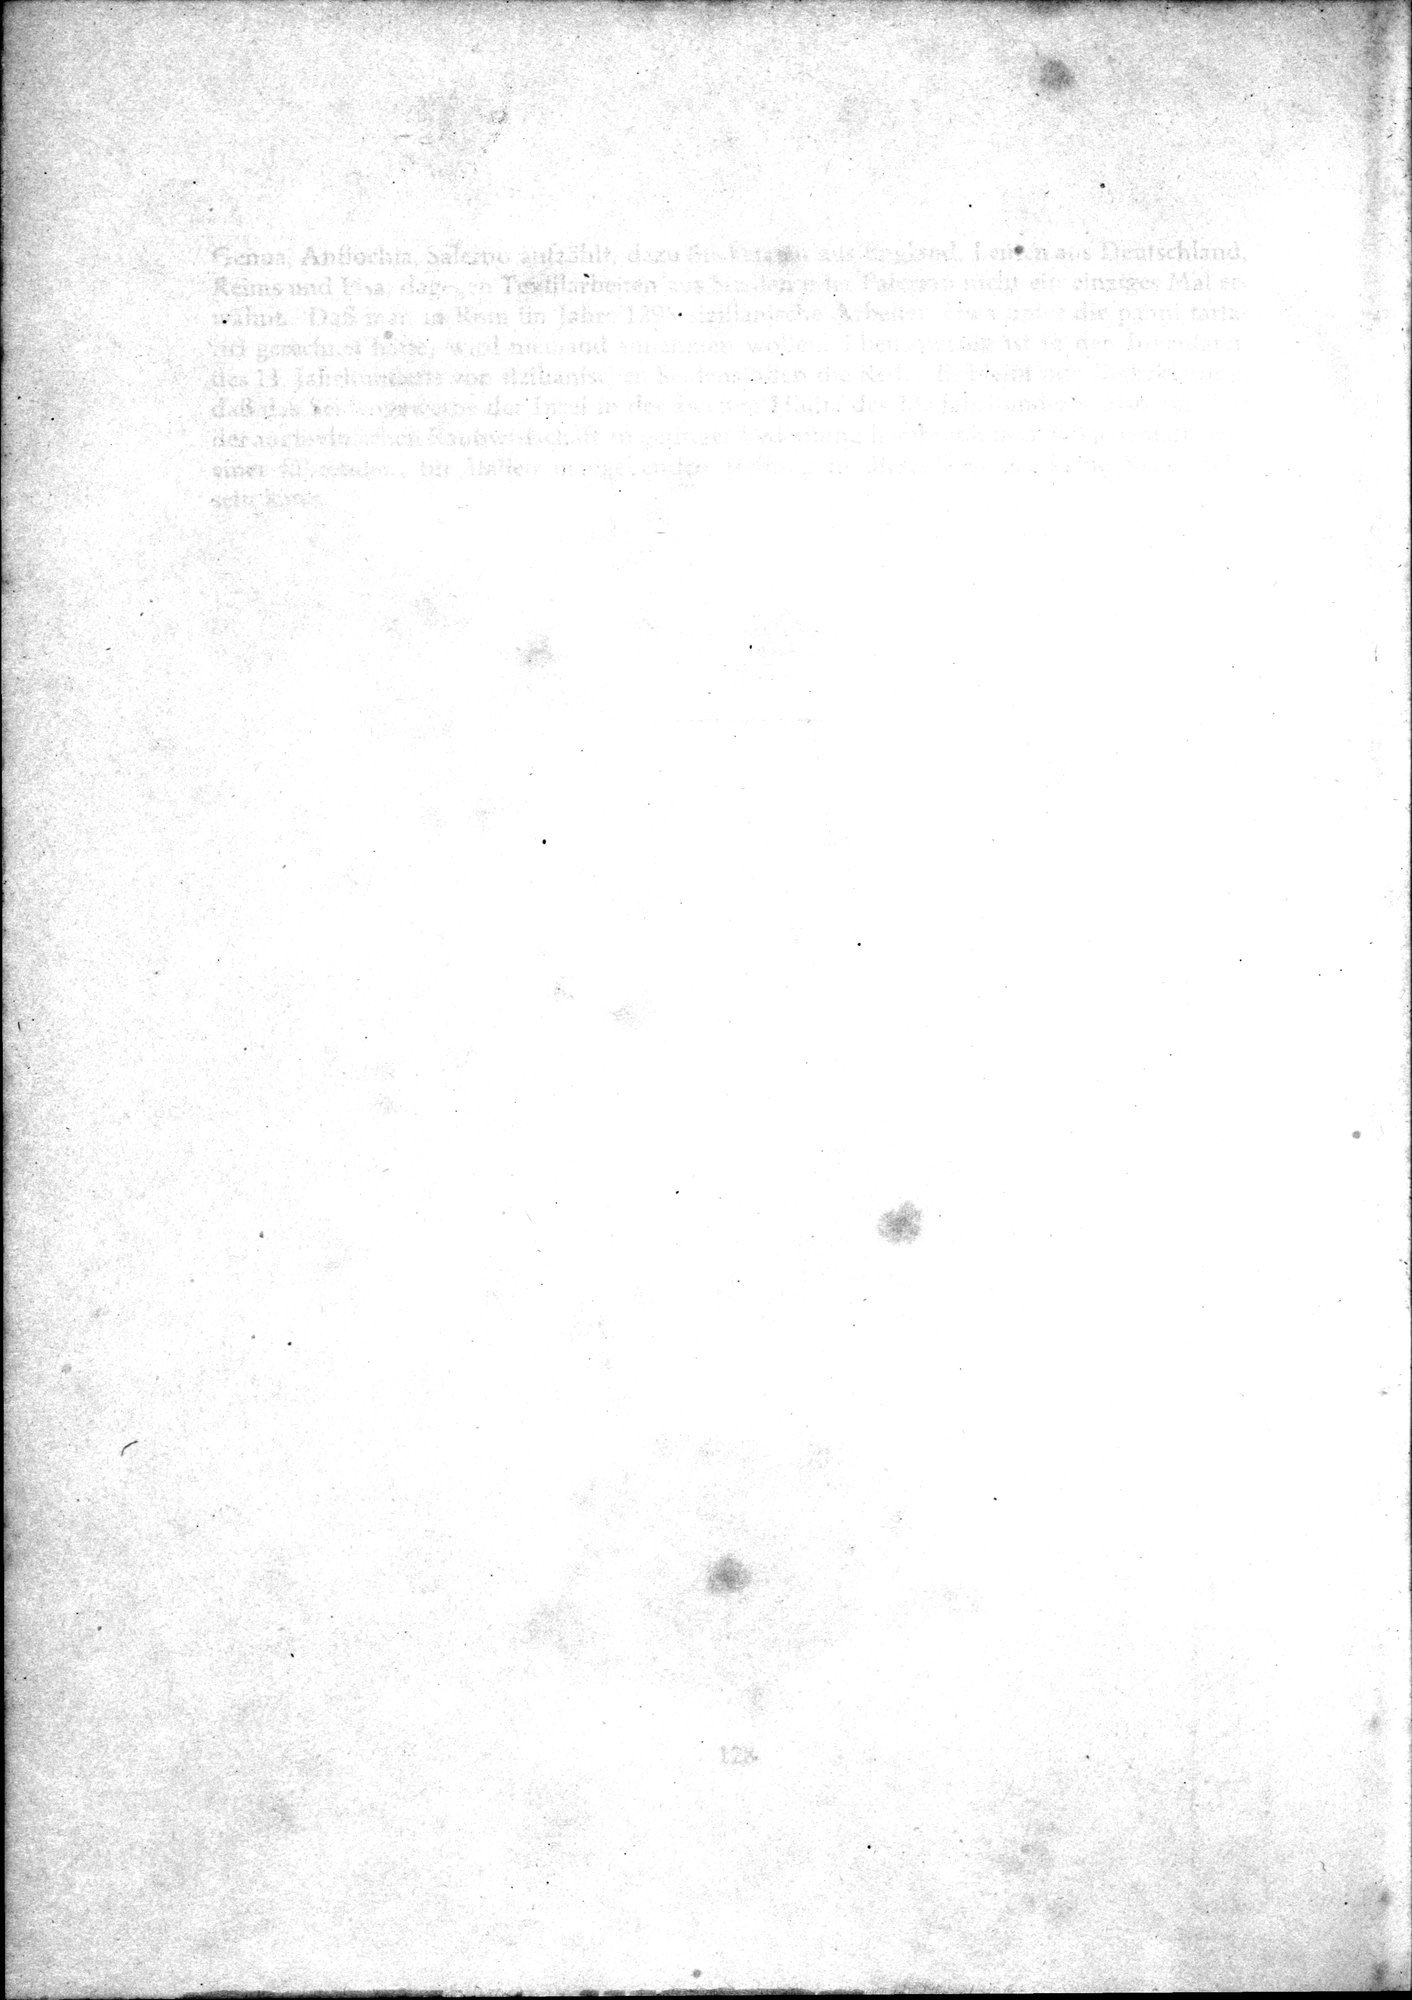 Kunstgeschichte der Seidenweberei : vol.1 / Page 266 (Grayscale High Resolution Image)